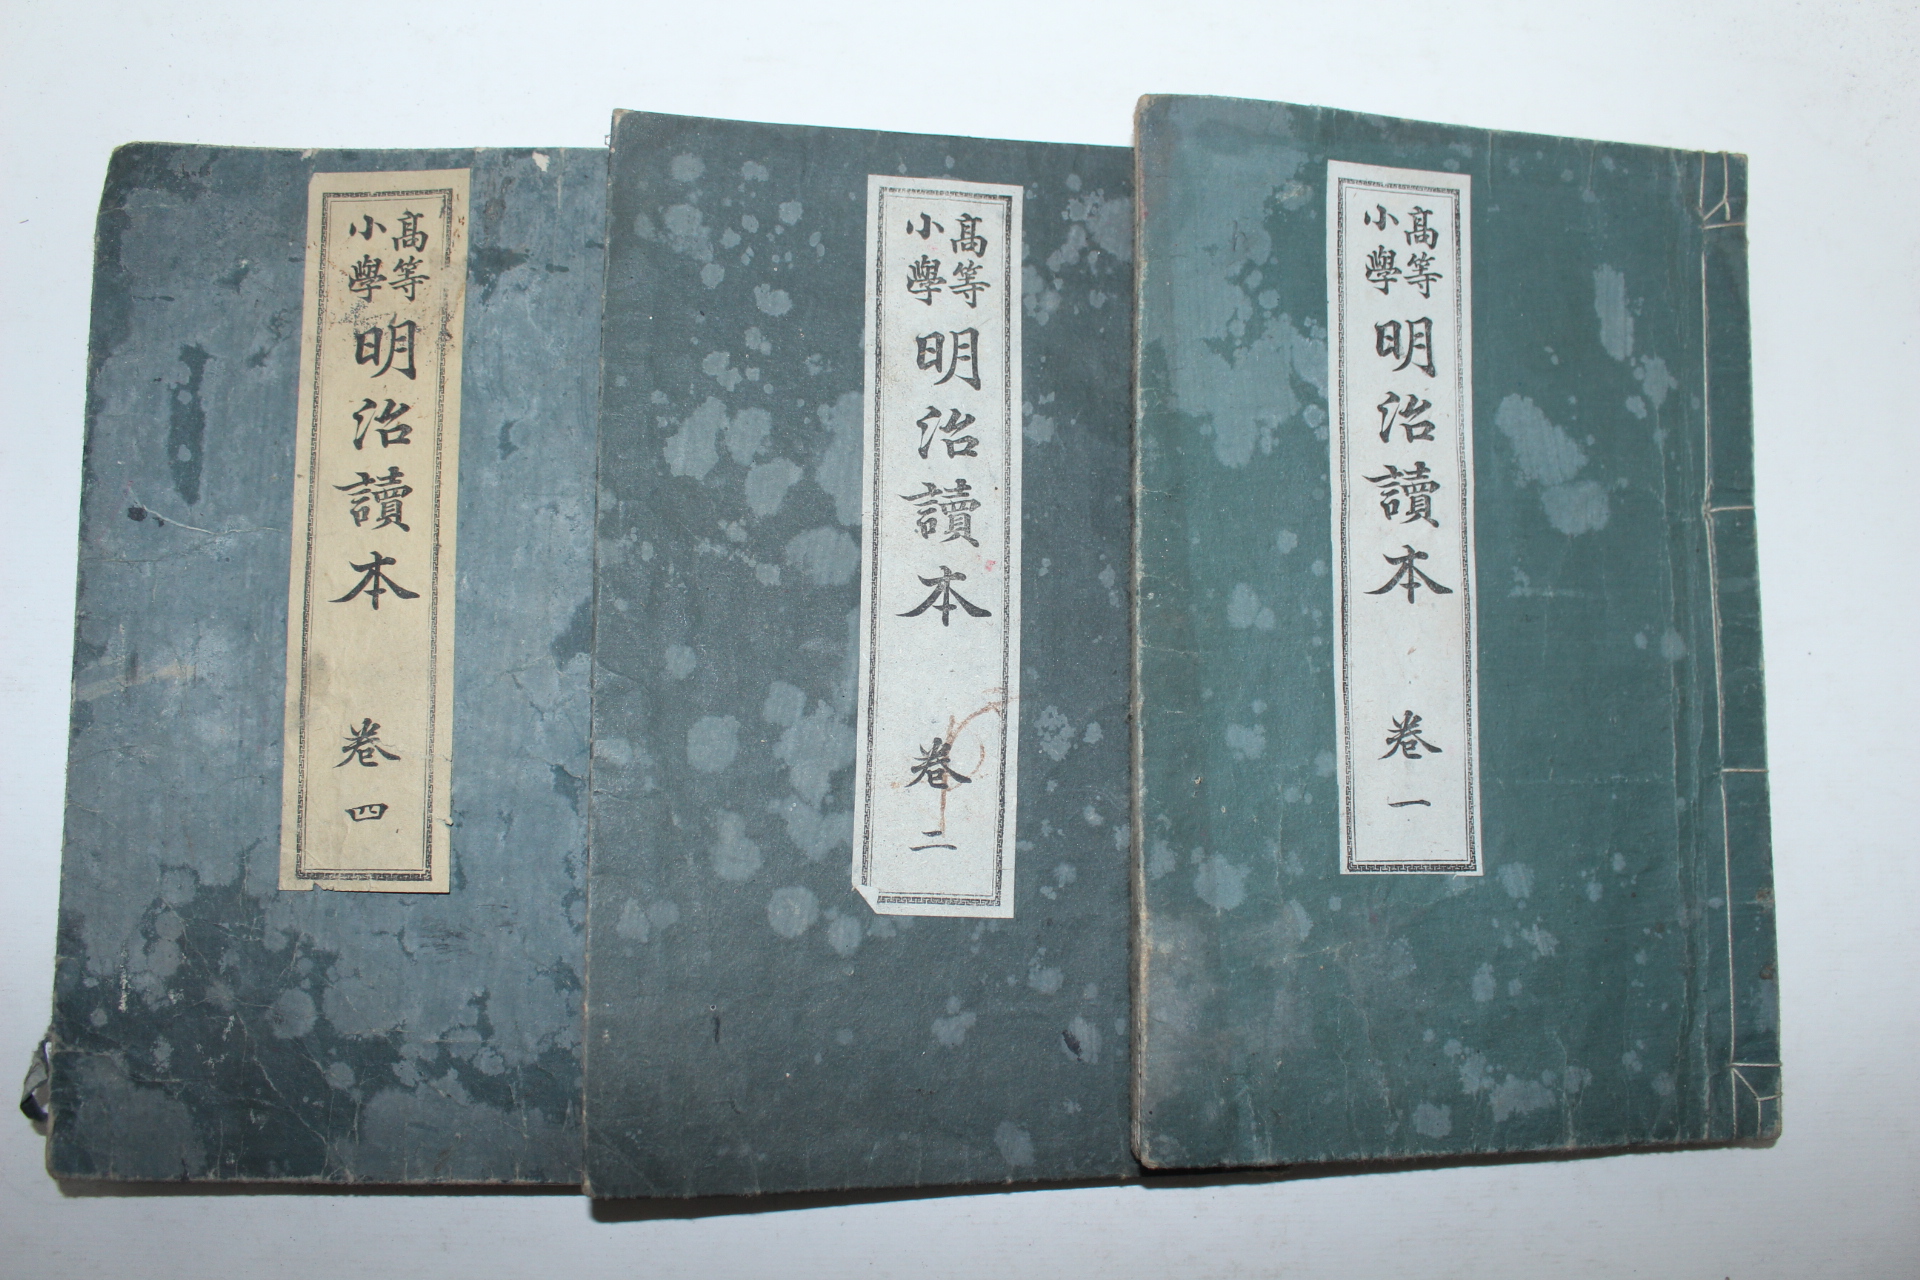 1896년(명치29년) 일본간행 고등소학 명치독본(明治讀本) 3책